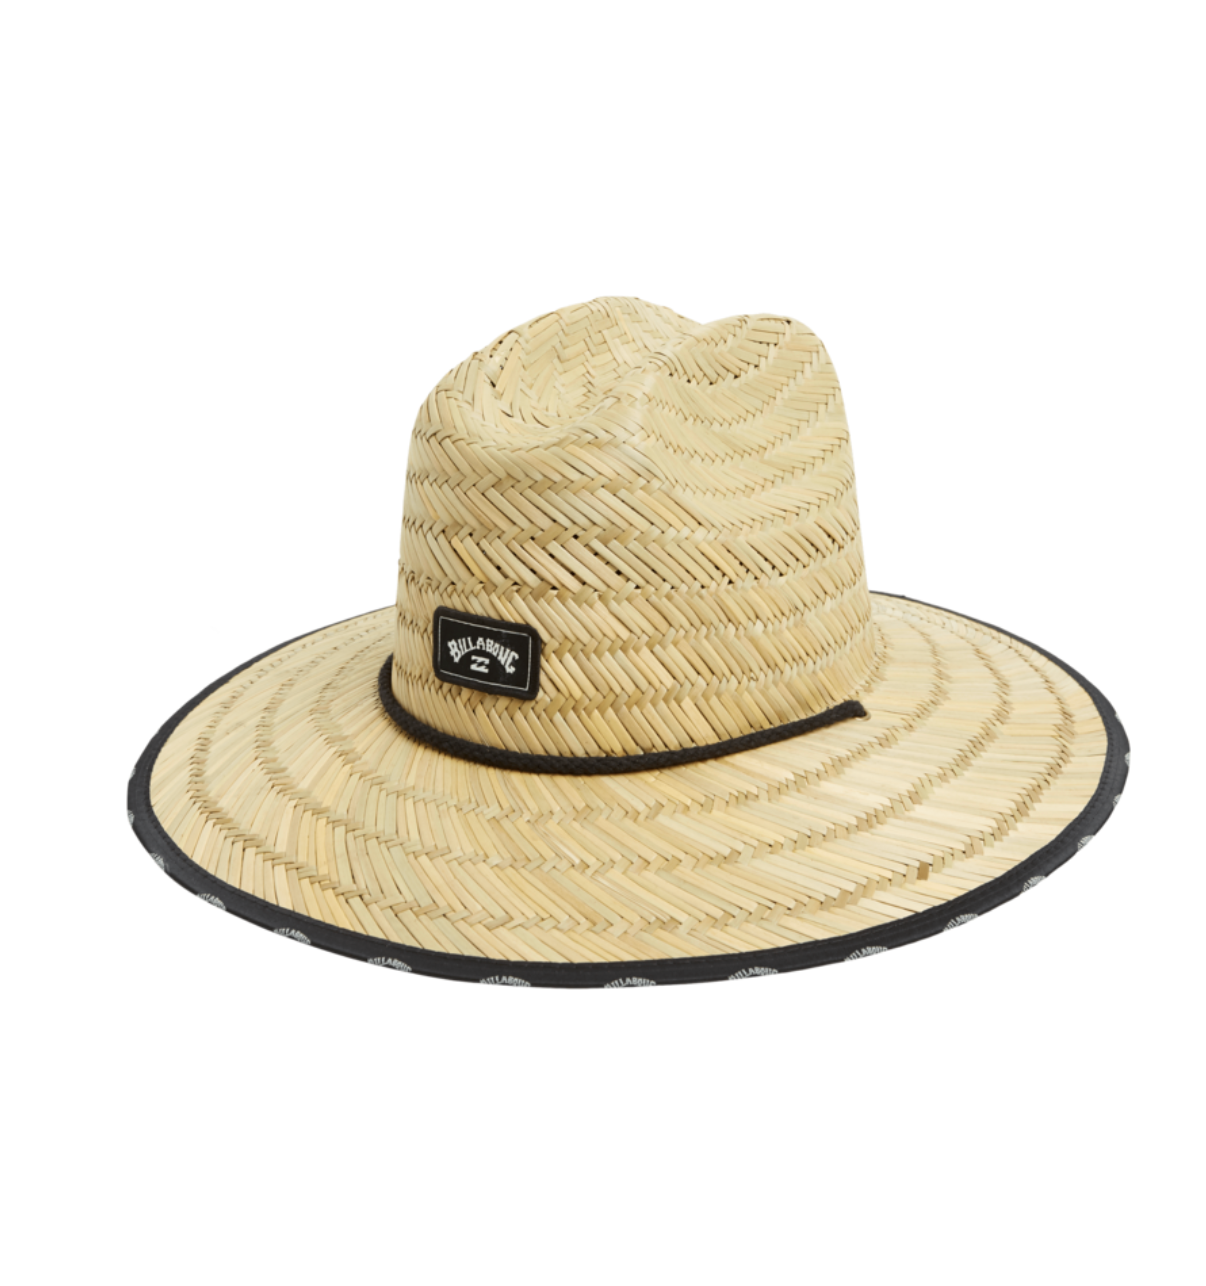 Waves Straw Hat